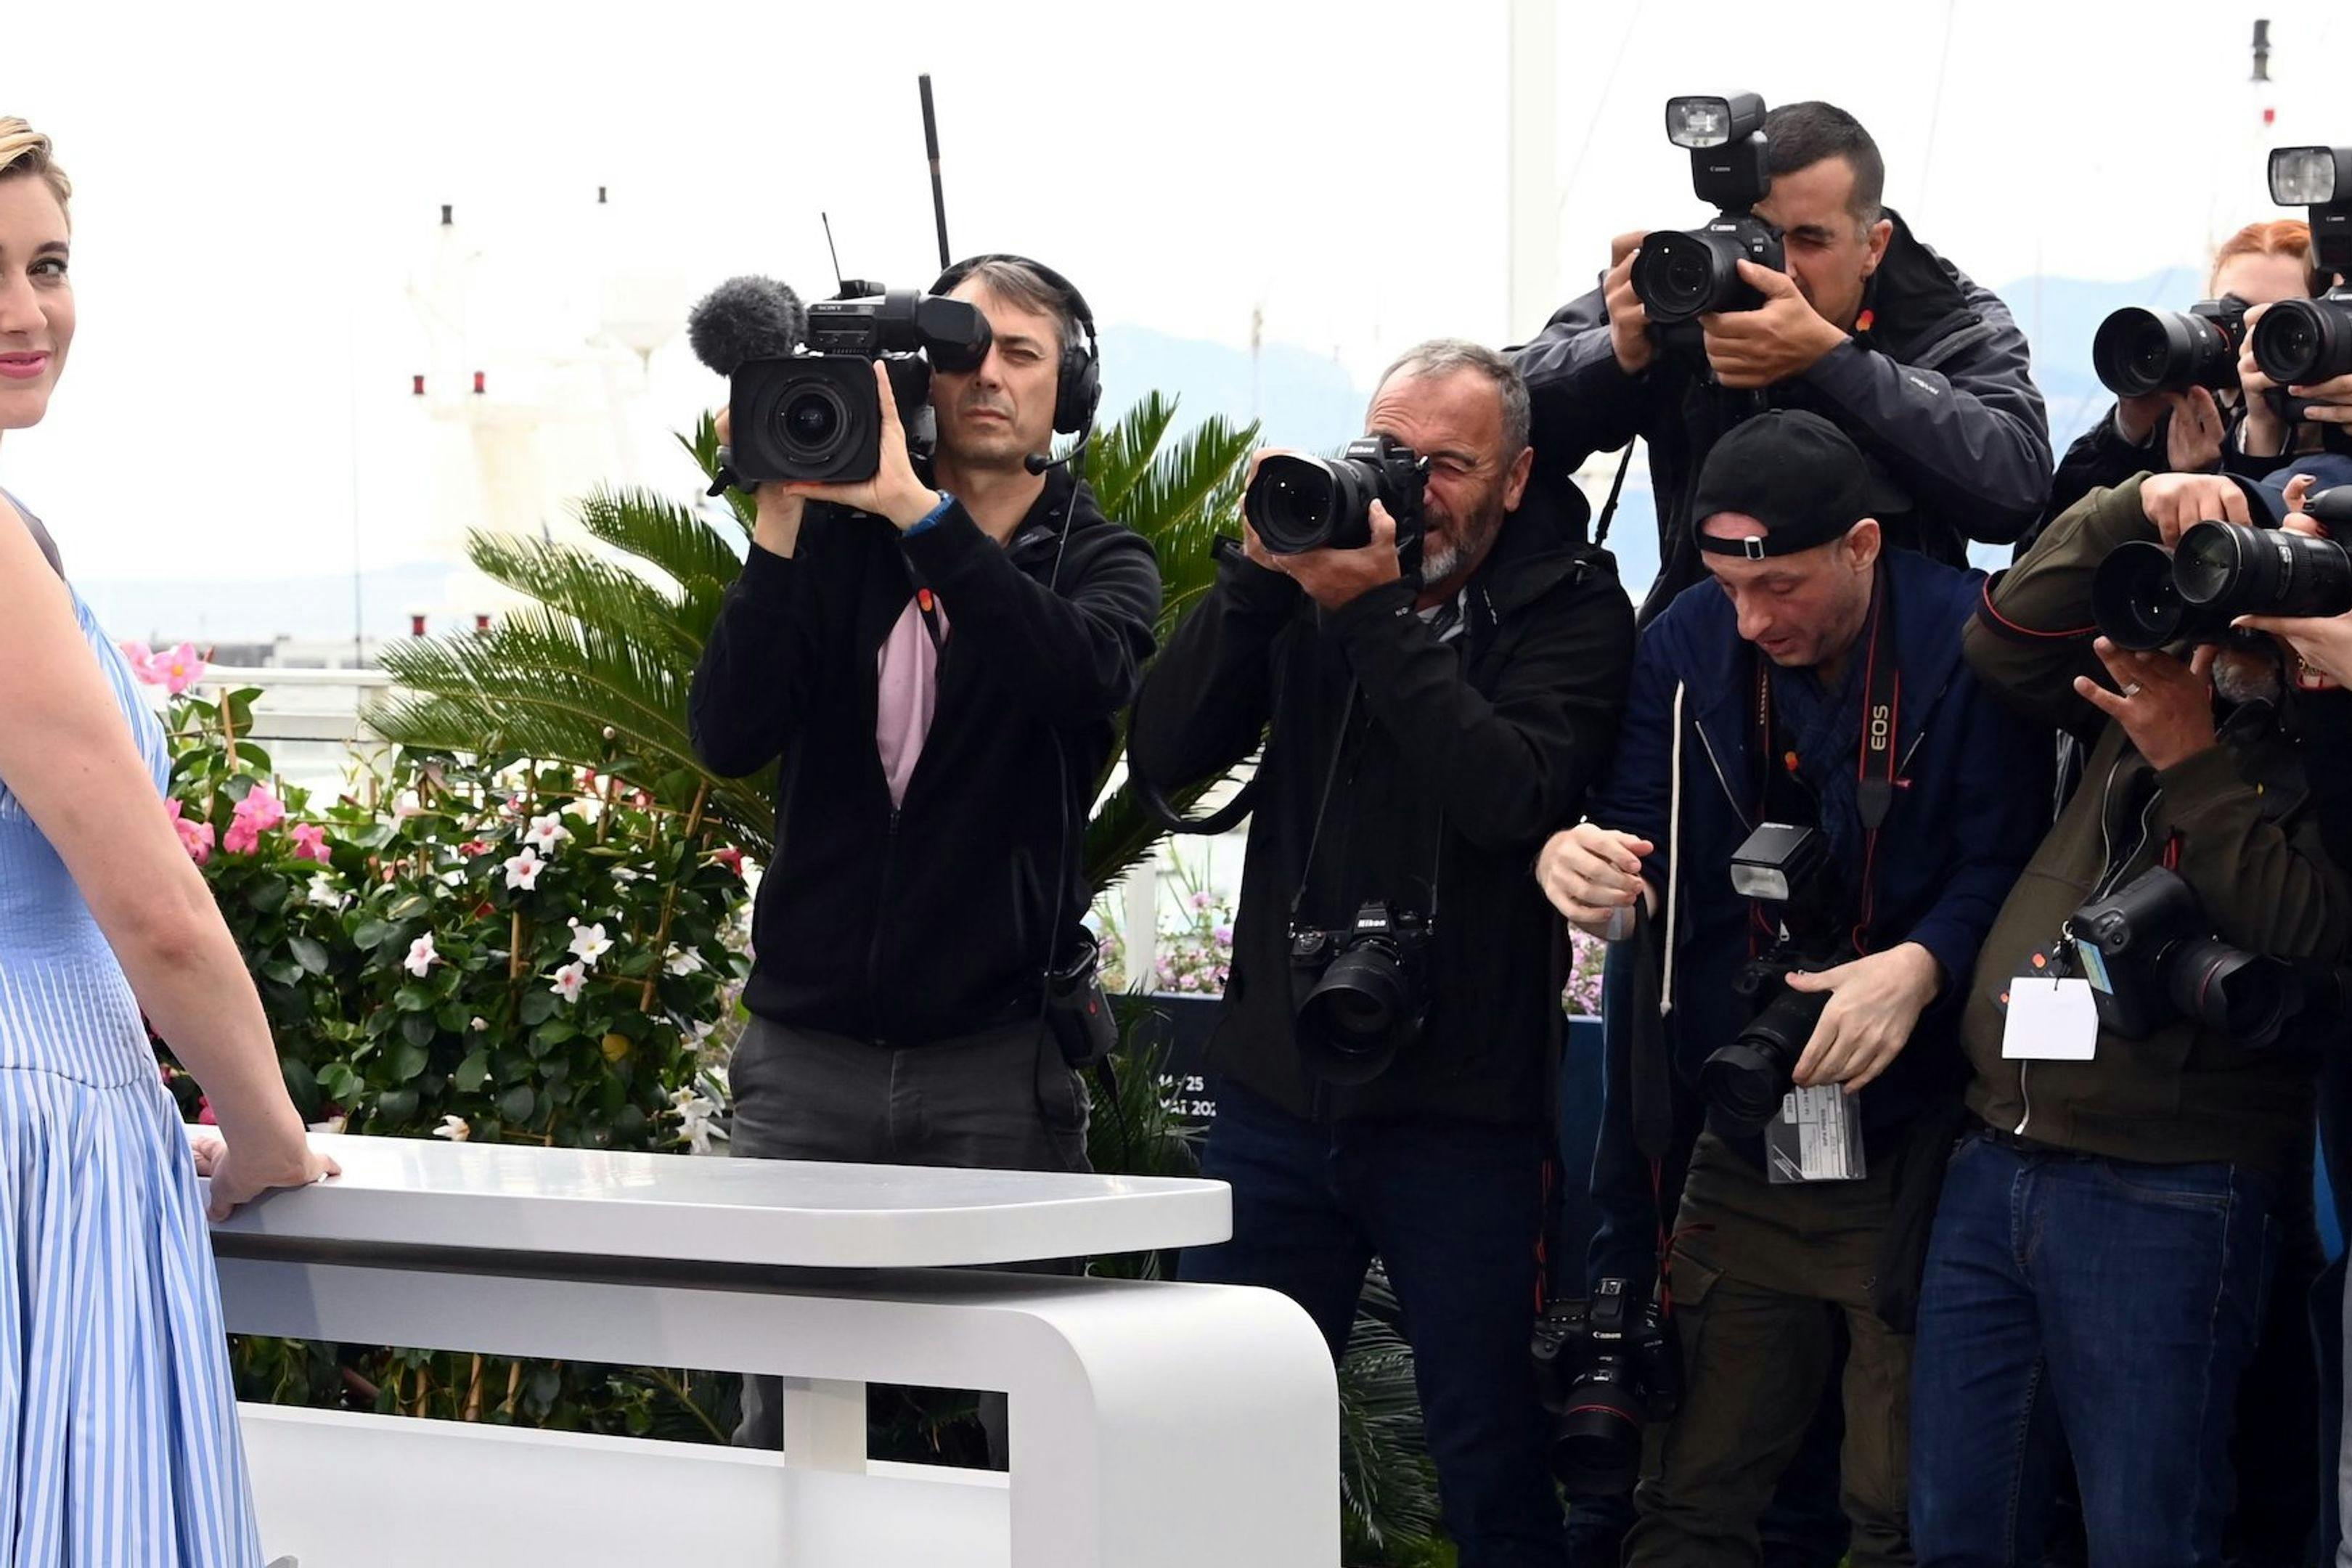 La directora Greta Gerwig posa ante los fotógrafos en la inauguración de la 77 edición del Festival de Cannes